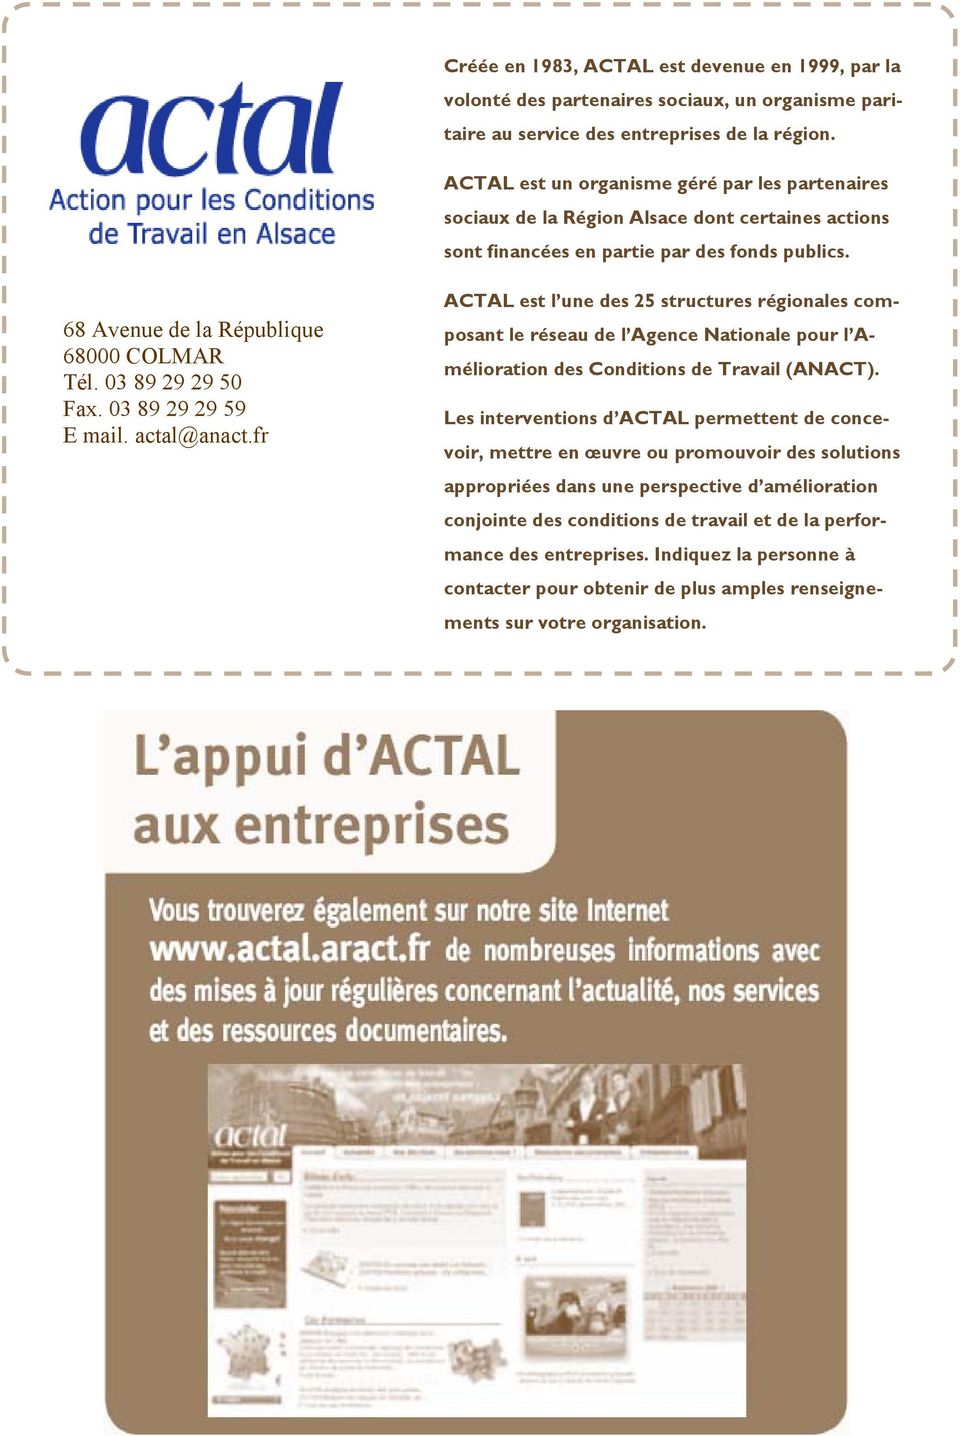 03 89 29 29 50 Fax. 03 89 29 29 59 E mail. actal@anact.fr ACTAL est l une des 25 structures régionales composant le réseau de l Agence Nationale pour l Amélioration des Conditions de Travail (ANACT).